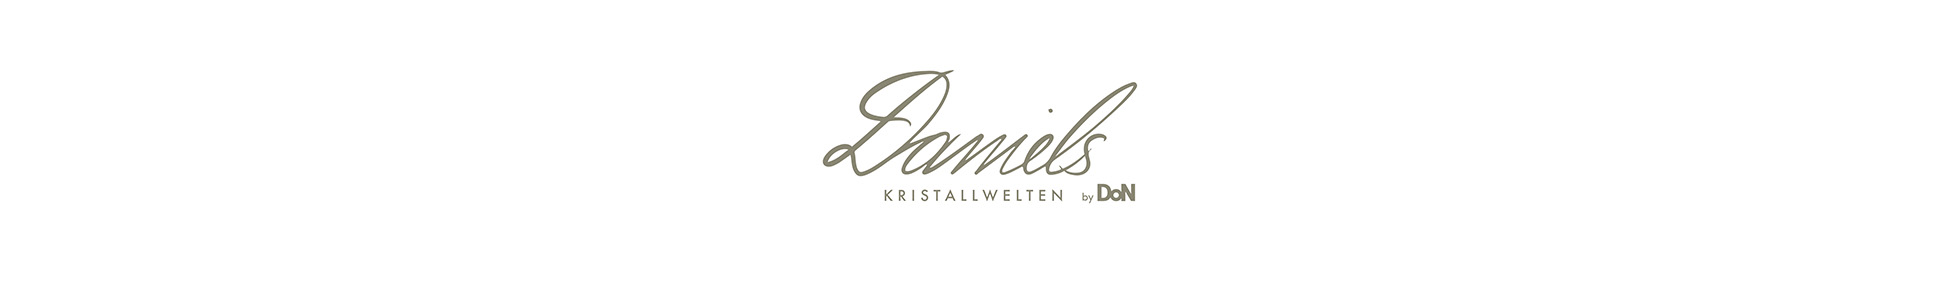 Restaurant Daniels Kristallwelten by DoN